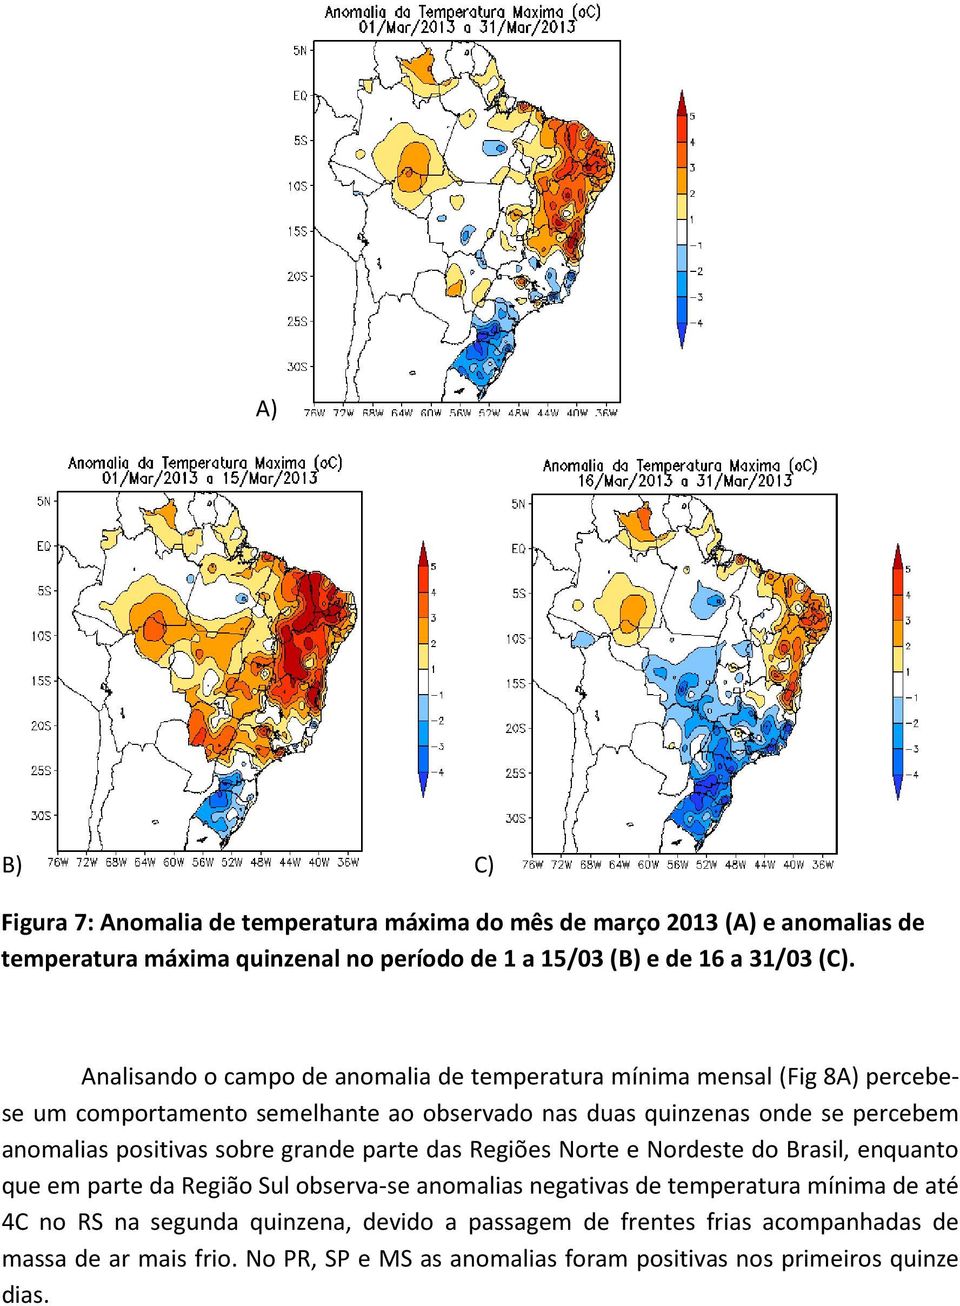 positivas sobre grande parte das Regiões Norte e Nordeste do Brasil, enquanto que em parte da Região Sul observa-se anomalias negativas de temperatura mínima de até 4C